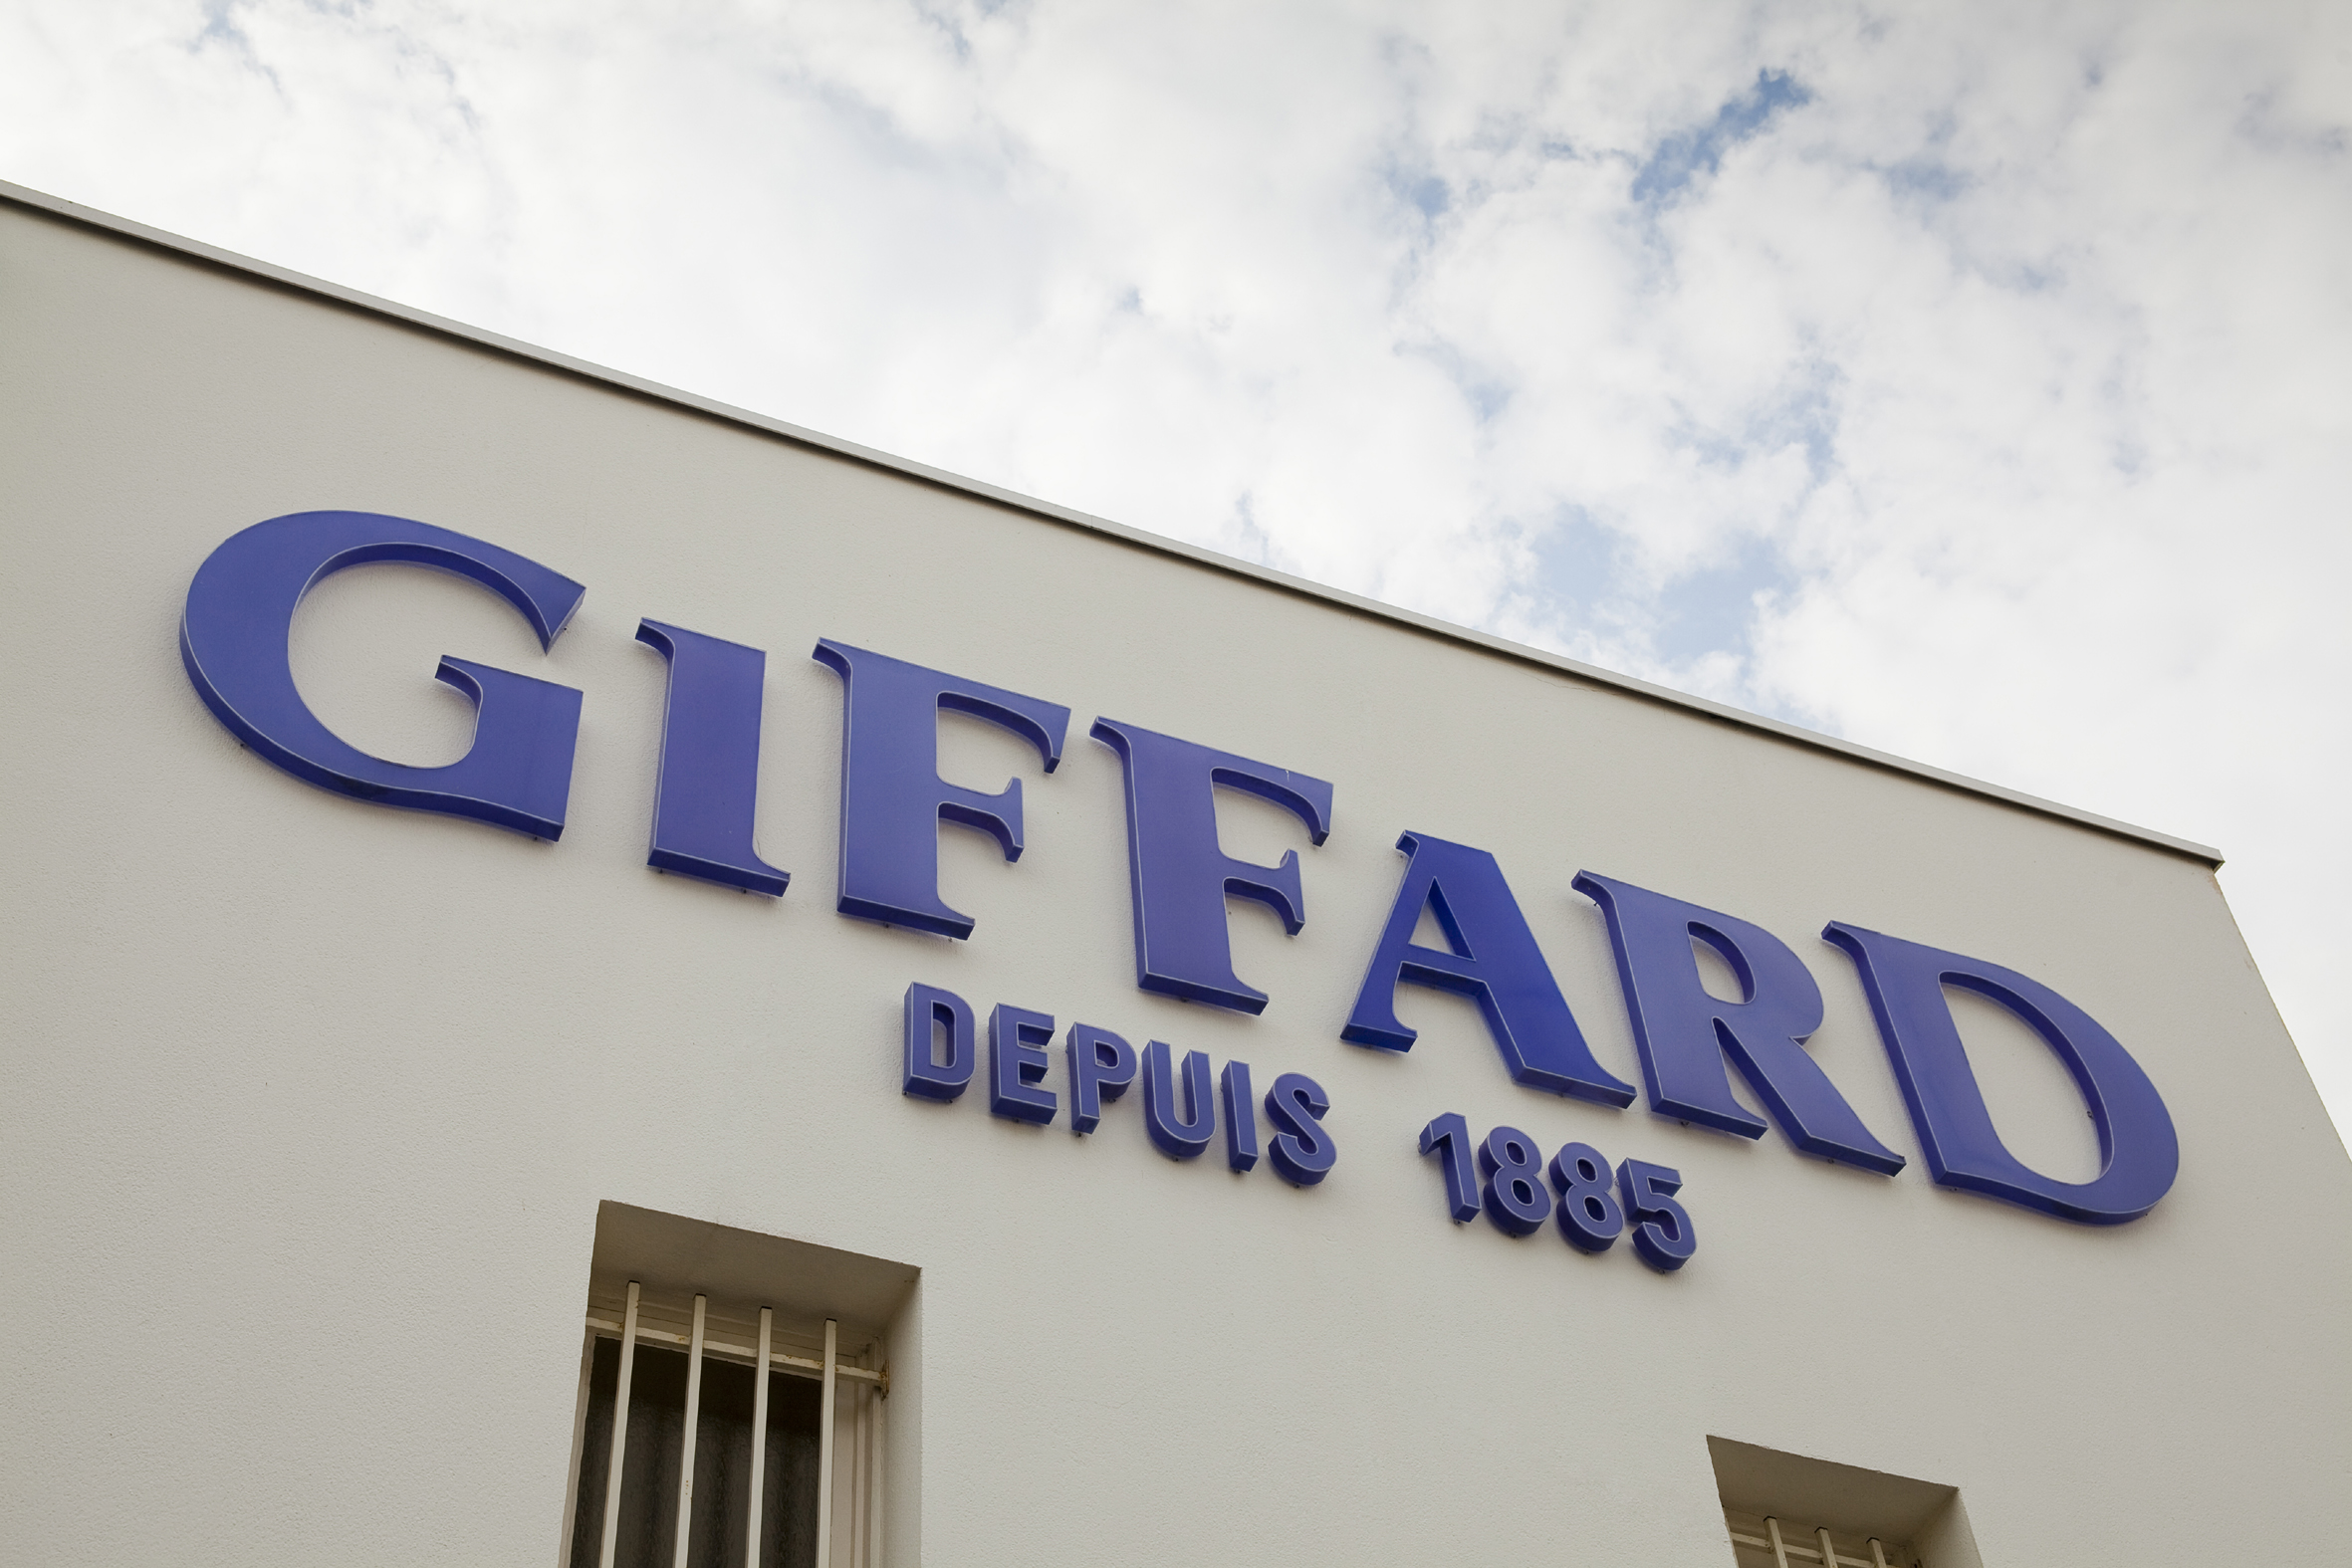 GIFFARD - Thương hiệu Syrup cao cấp lâu đời nhất của Pháp đã có mặt tại Thực Phẩm Plaza